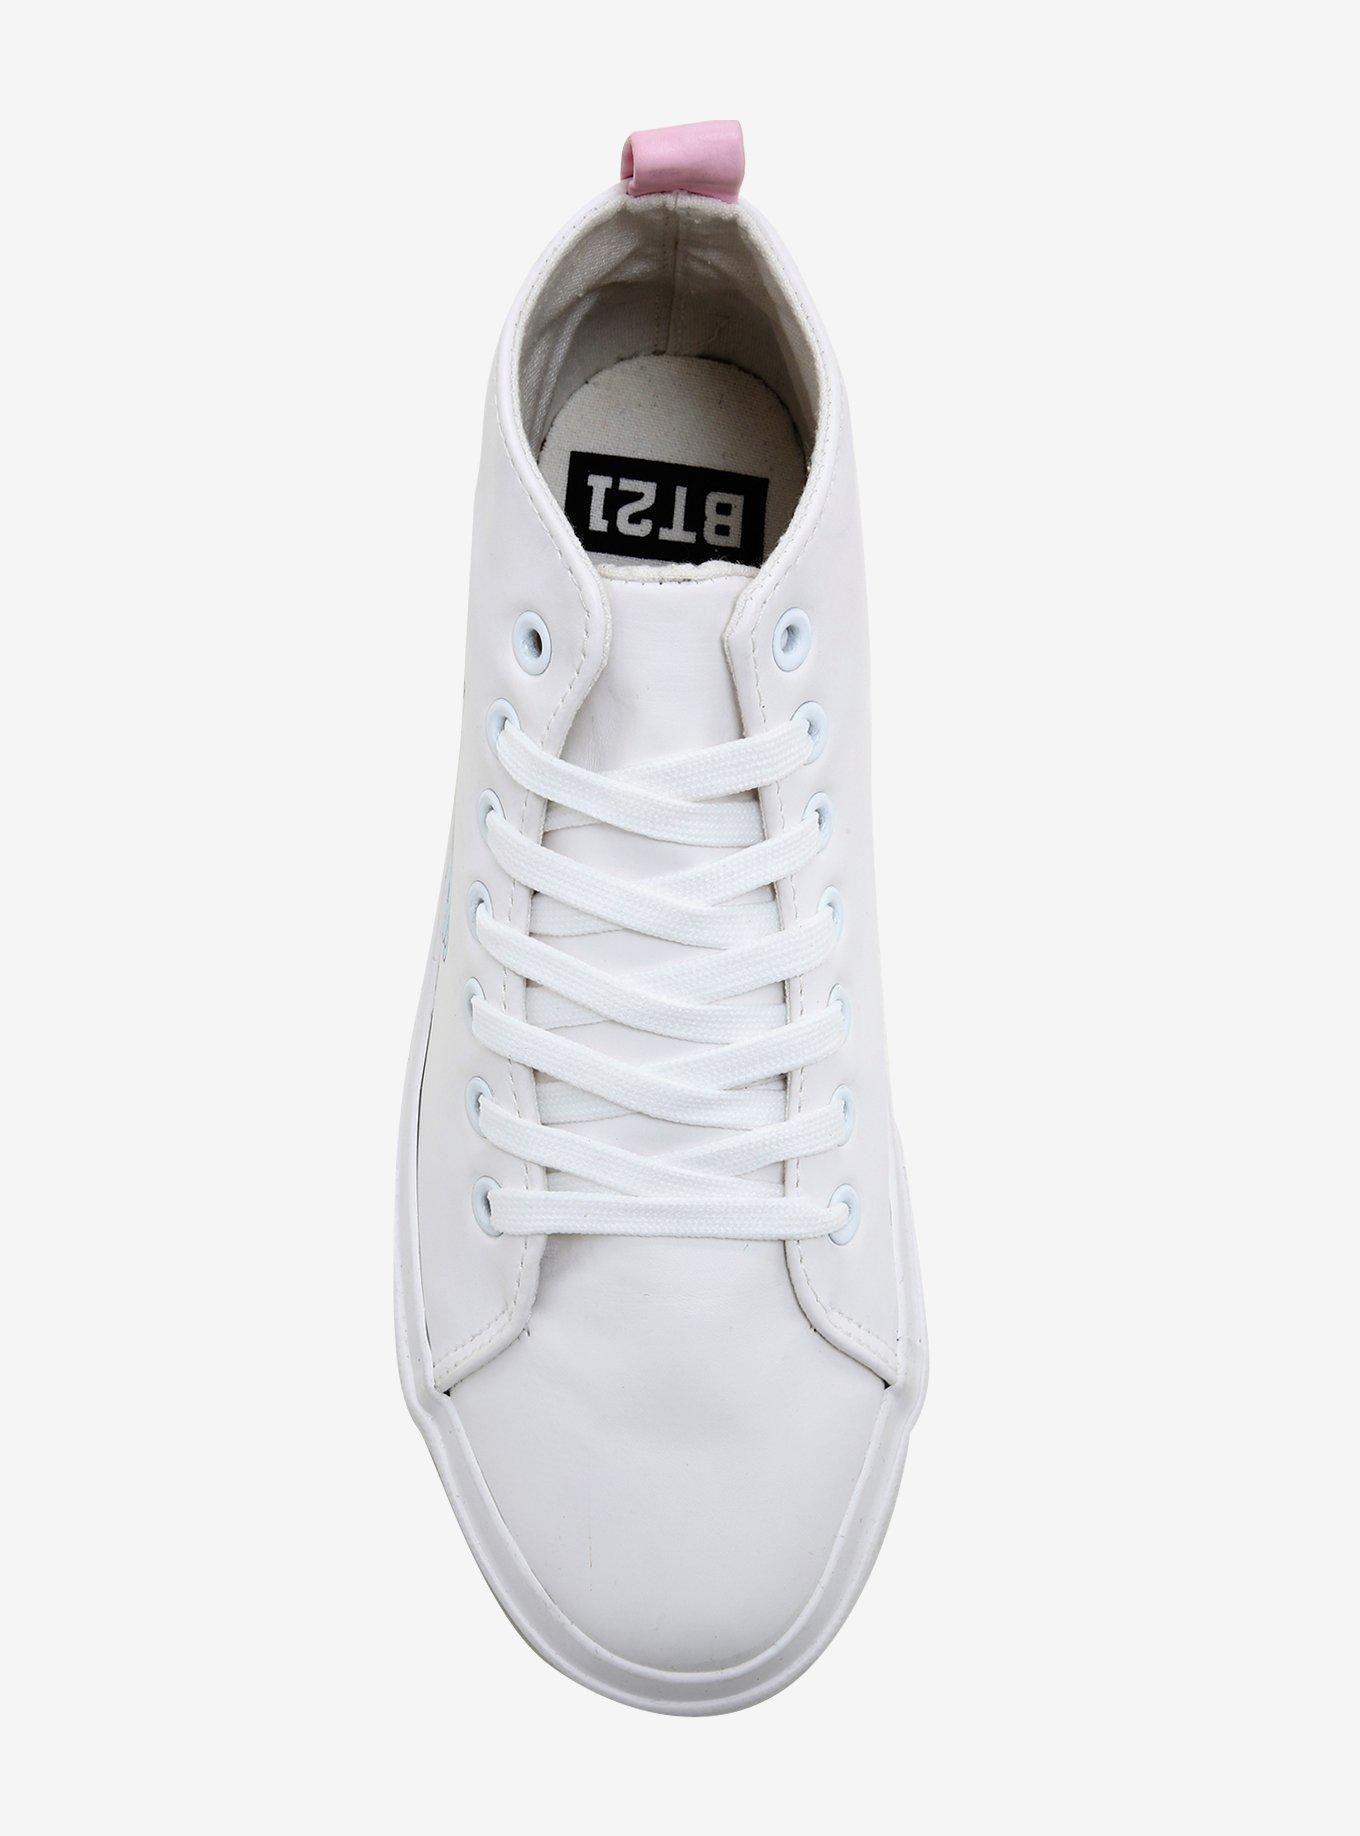 BT21 Hi-Top Sneakers, , alternate